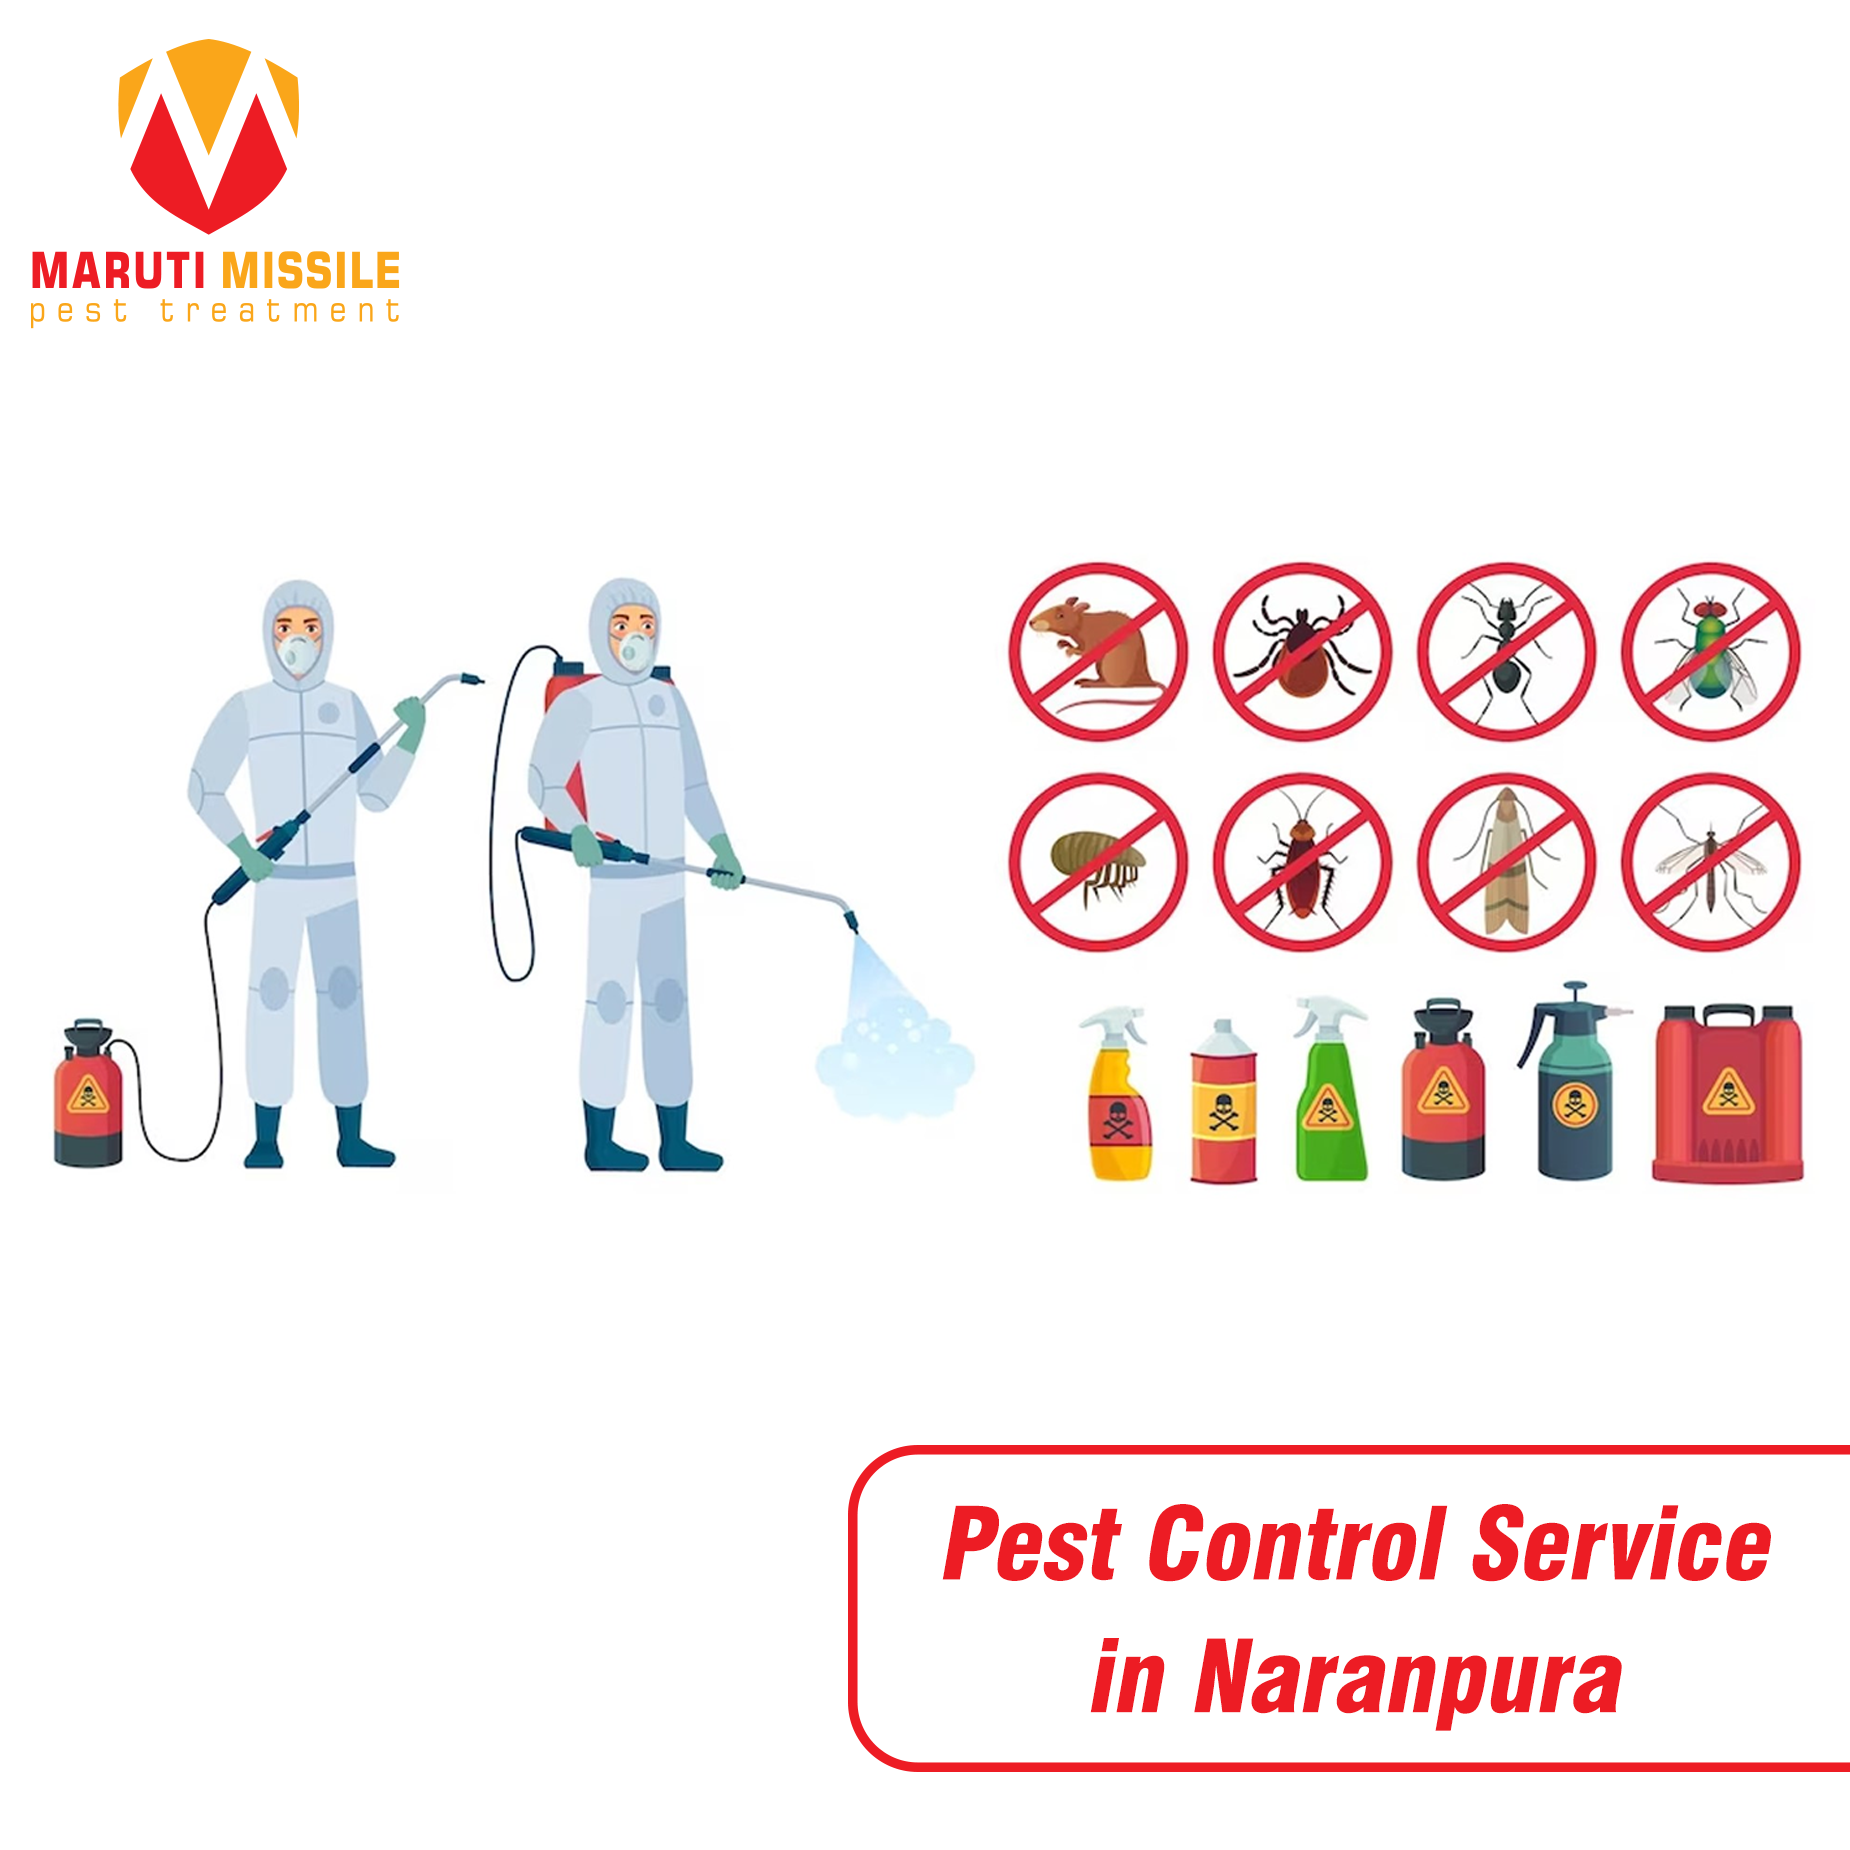 Pest Control Service in Naranpura